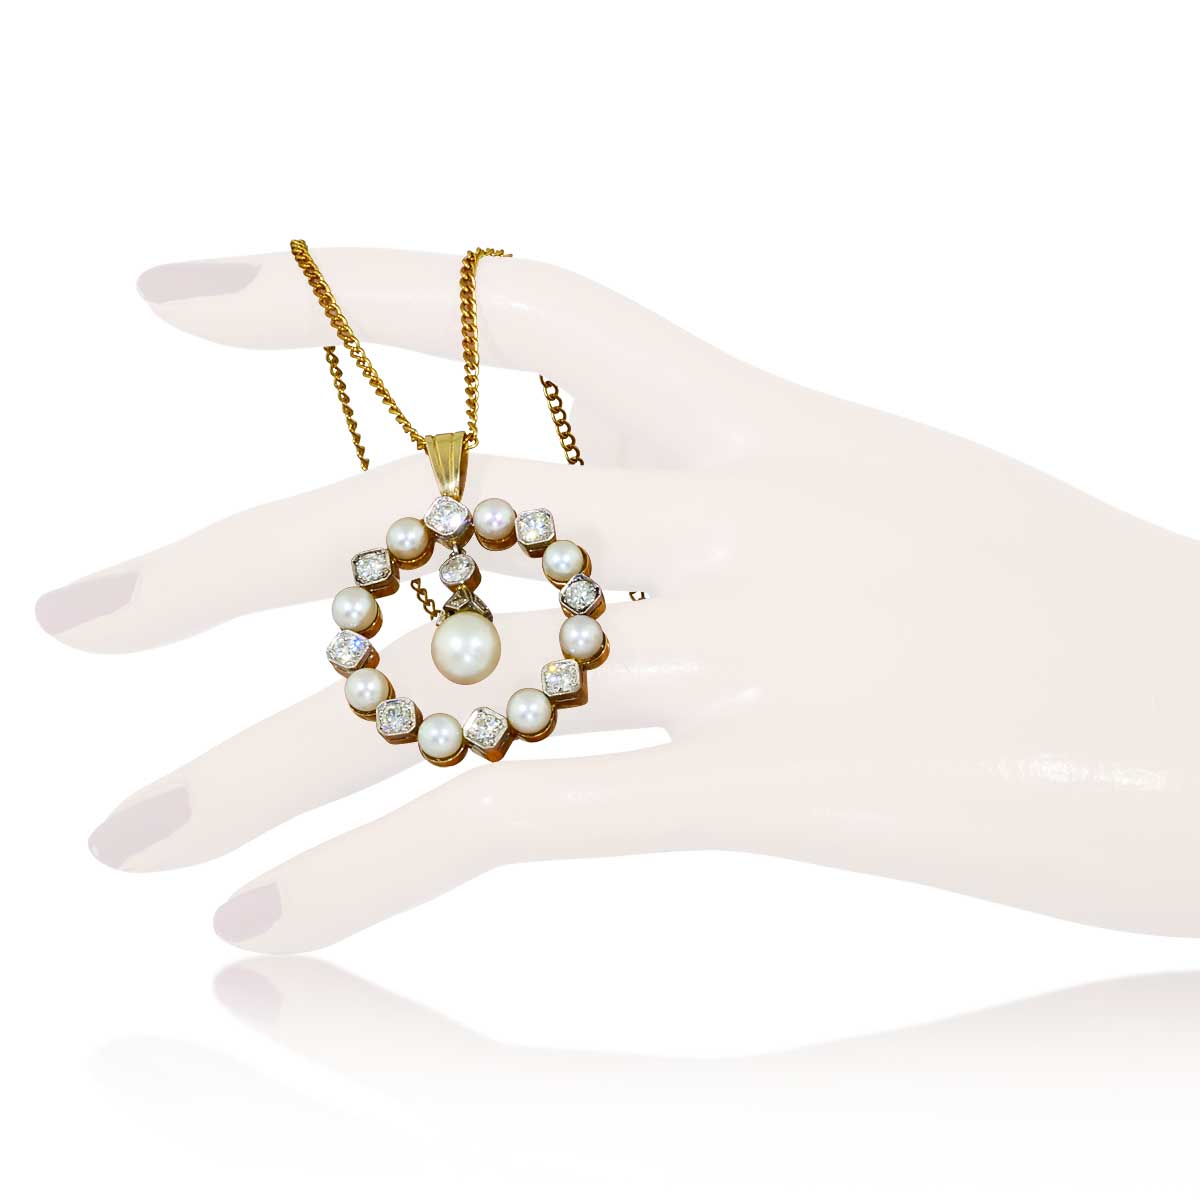 Diamant-Perlen-Anhänger, rund mit 1,35ct Diamanten und Perlen besetzt, in 14ct Gold